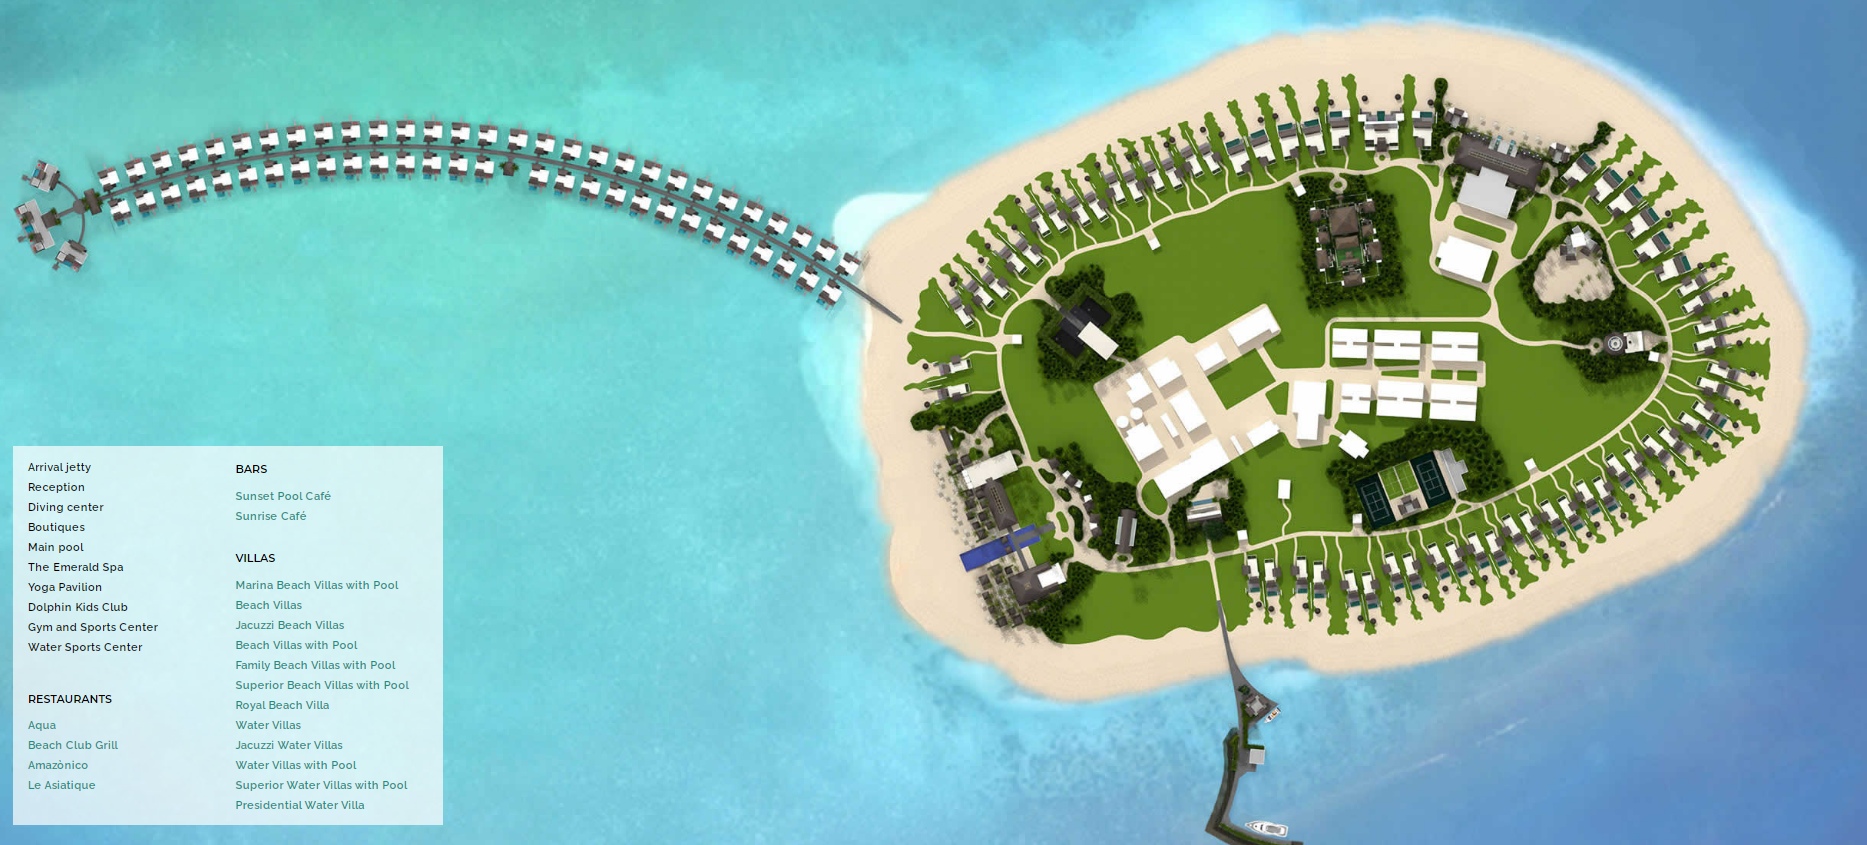 Карта отеля Emerald Maldives Resort